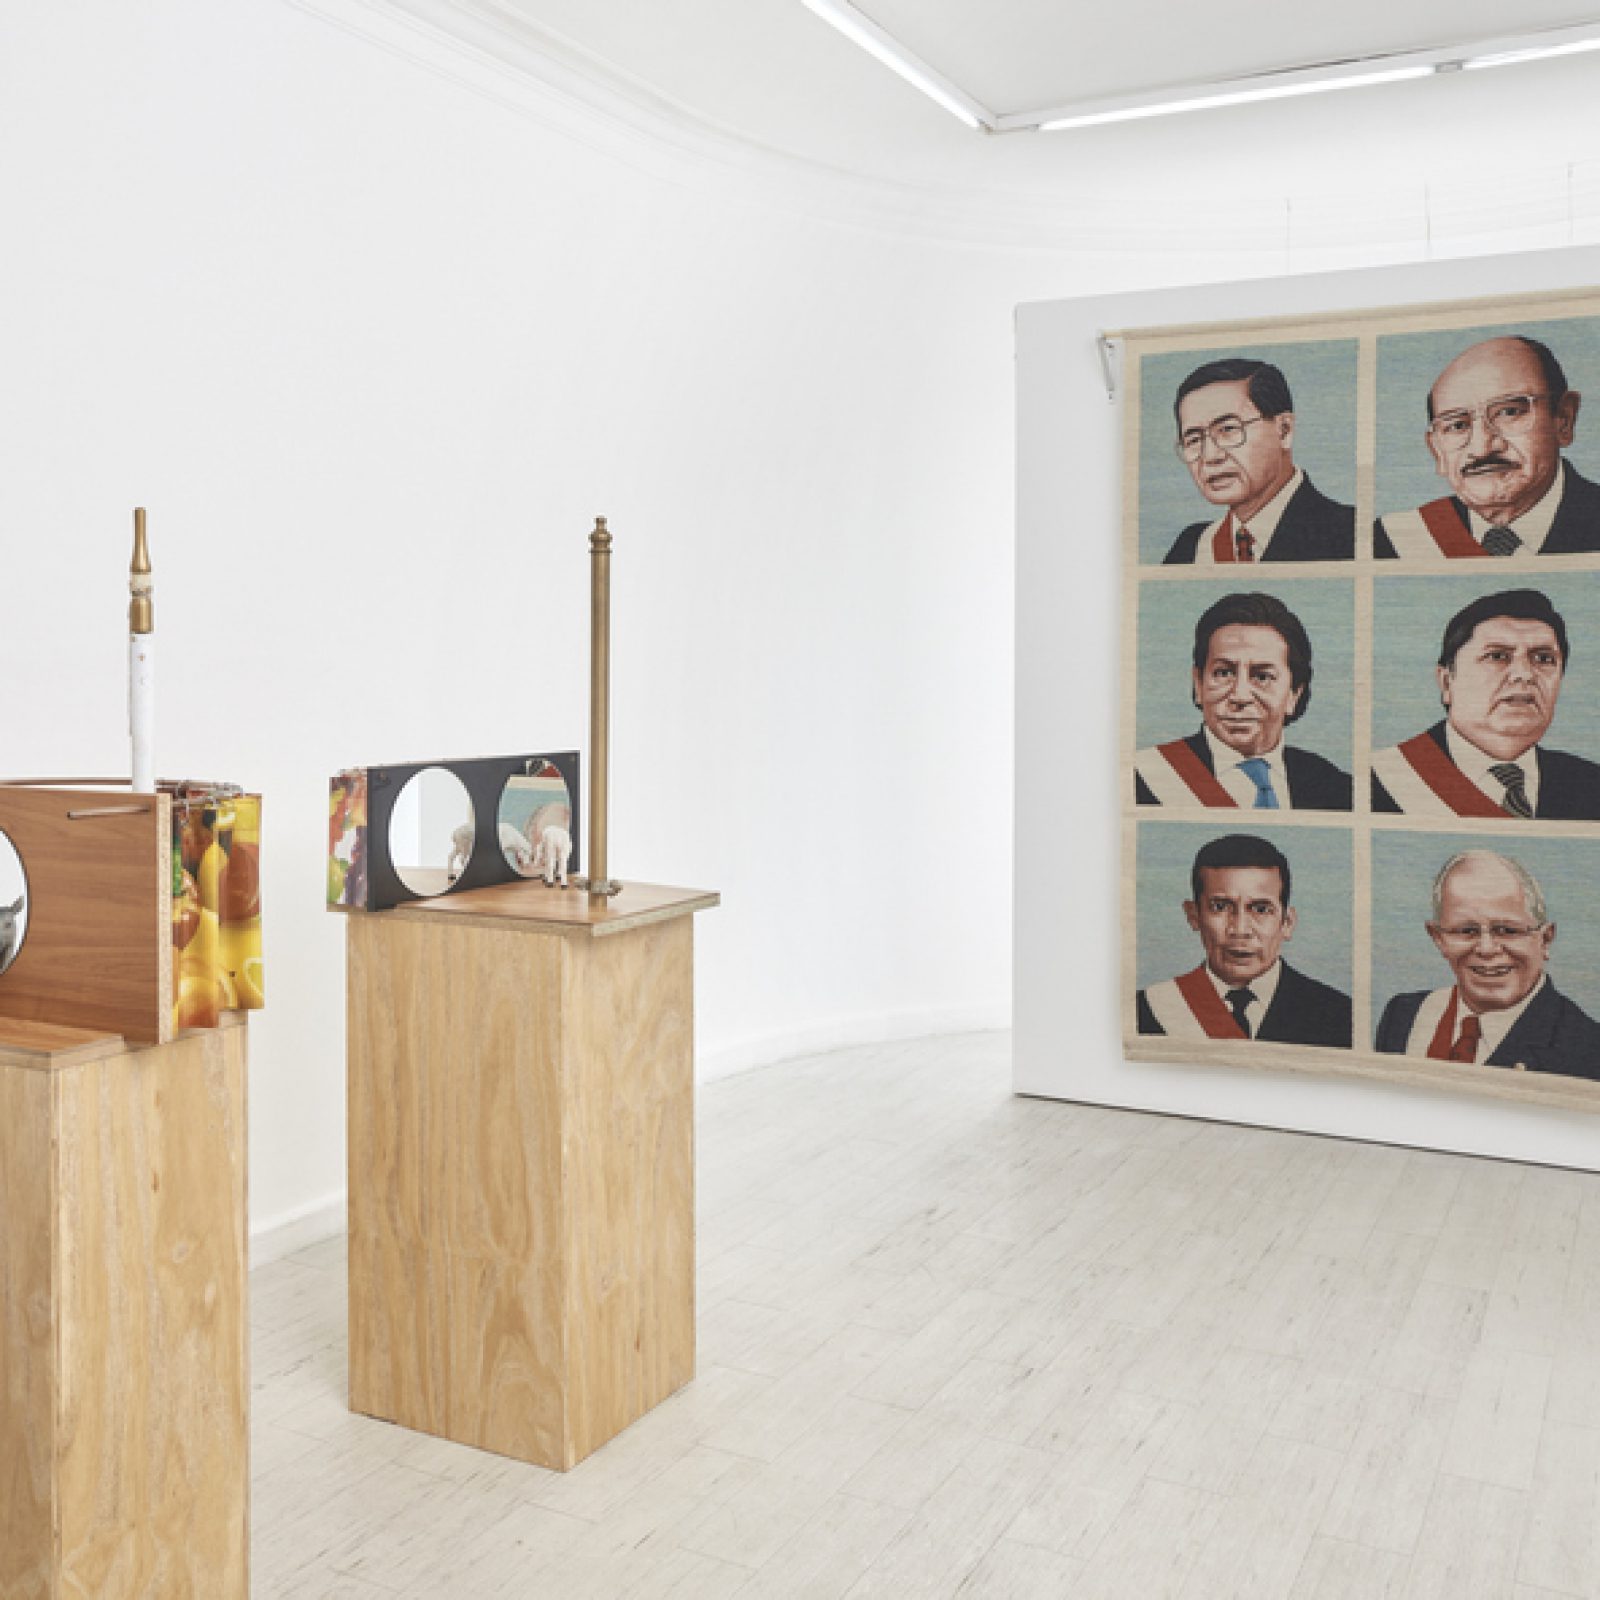 Vista de la exposición "Aquí no pasa nada", de Miguel Aguirre, en Galería del Paseo, Lima, 2019. Foto: Juan Pablo Murrugarra